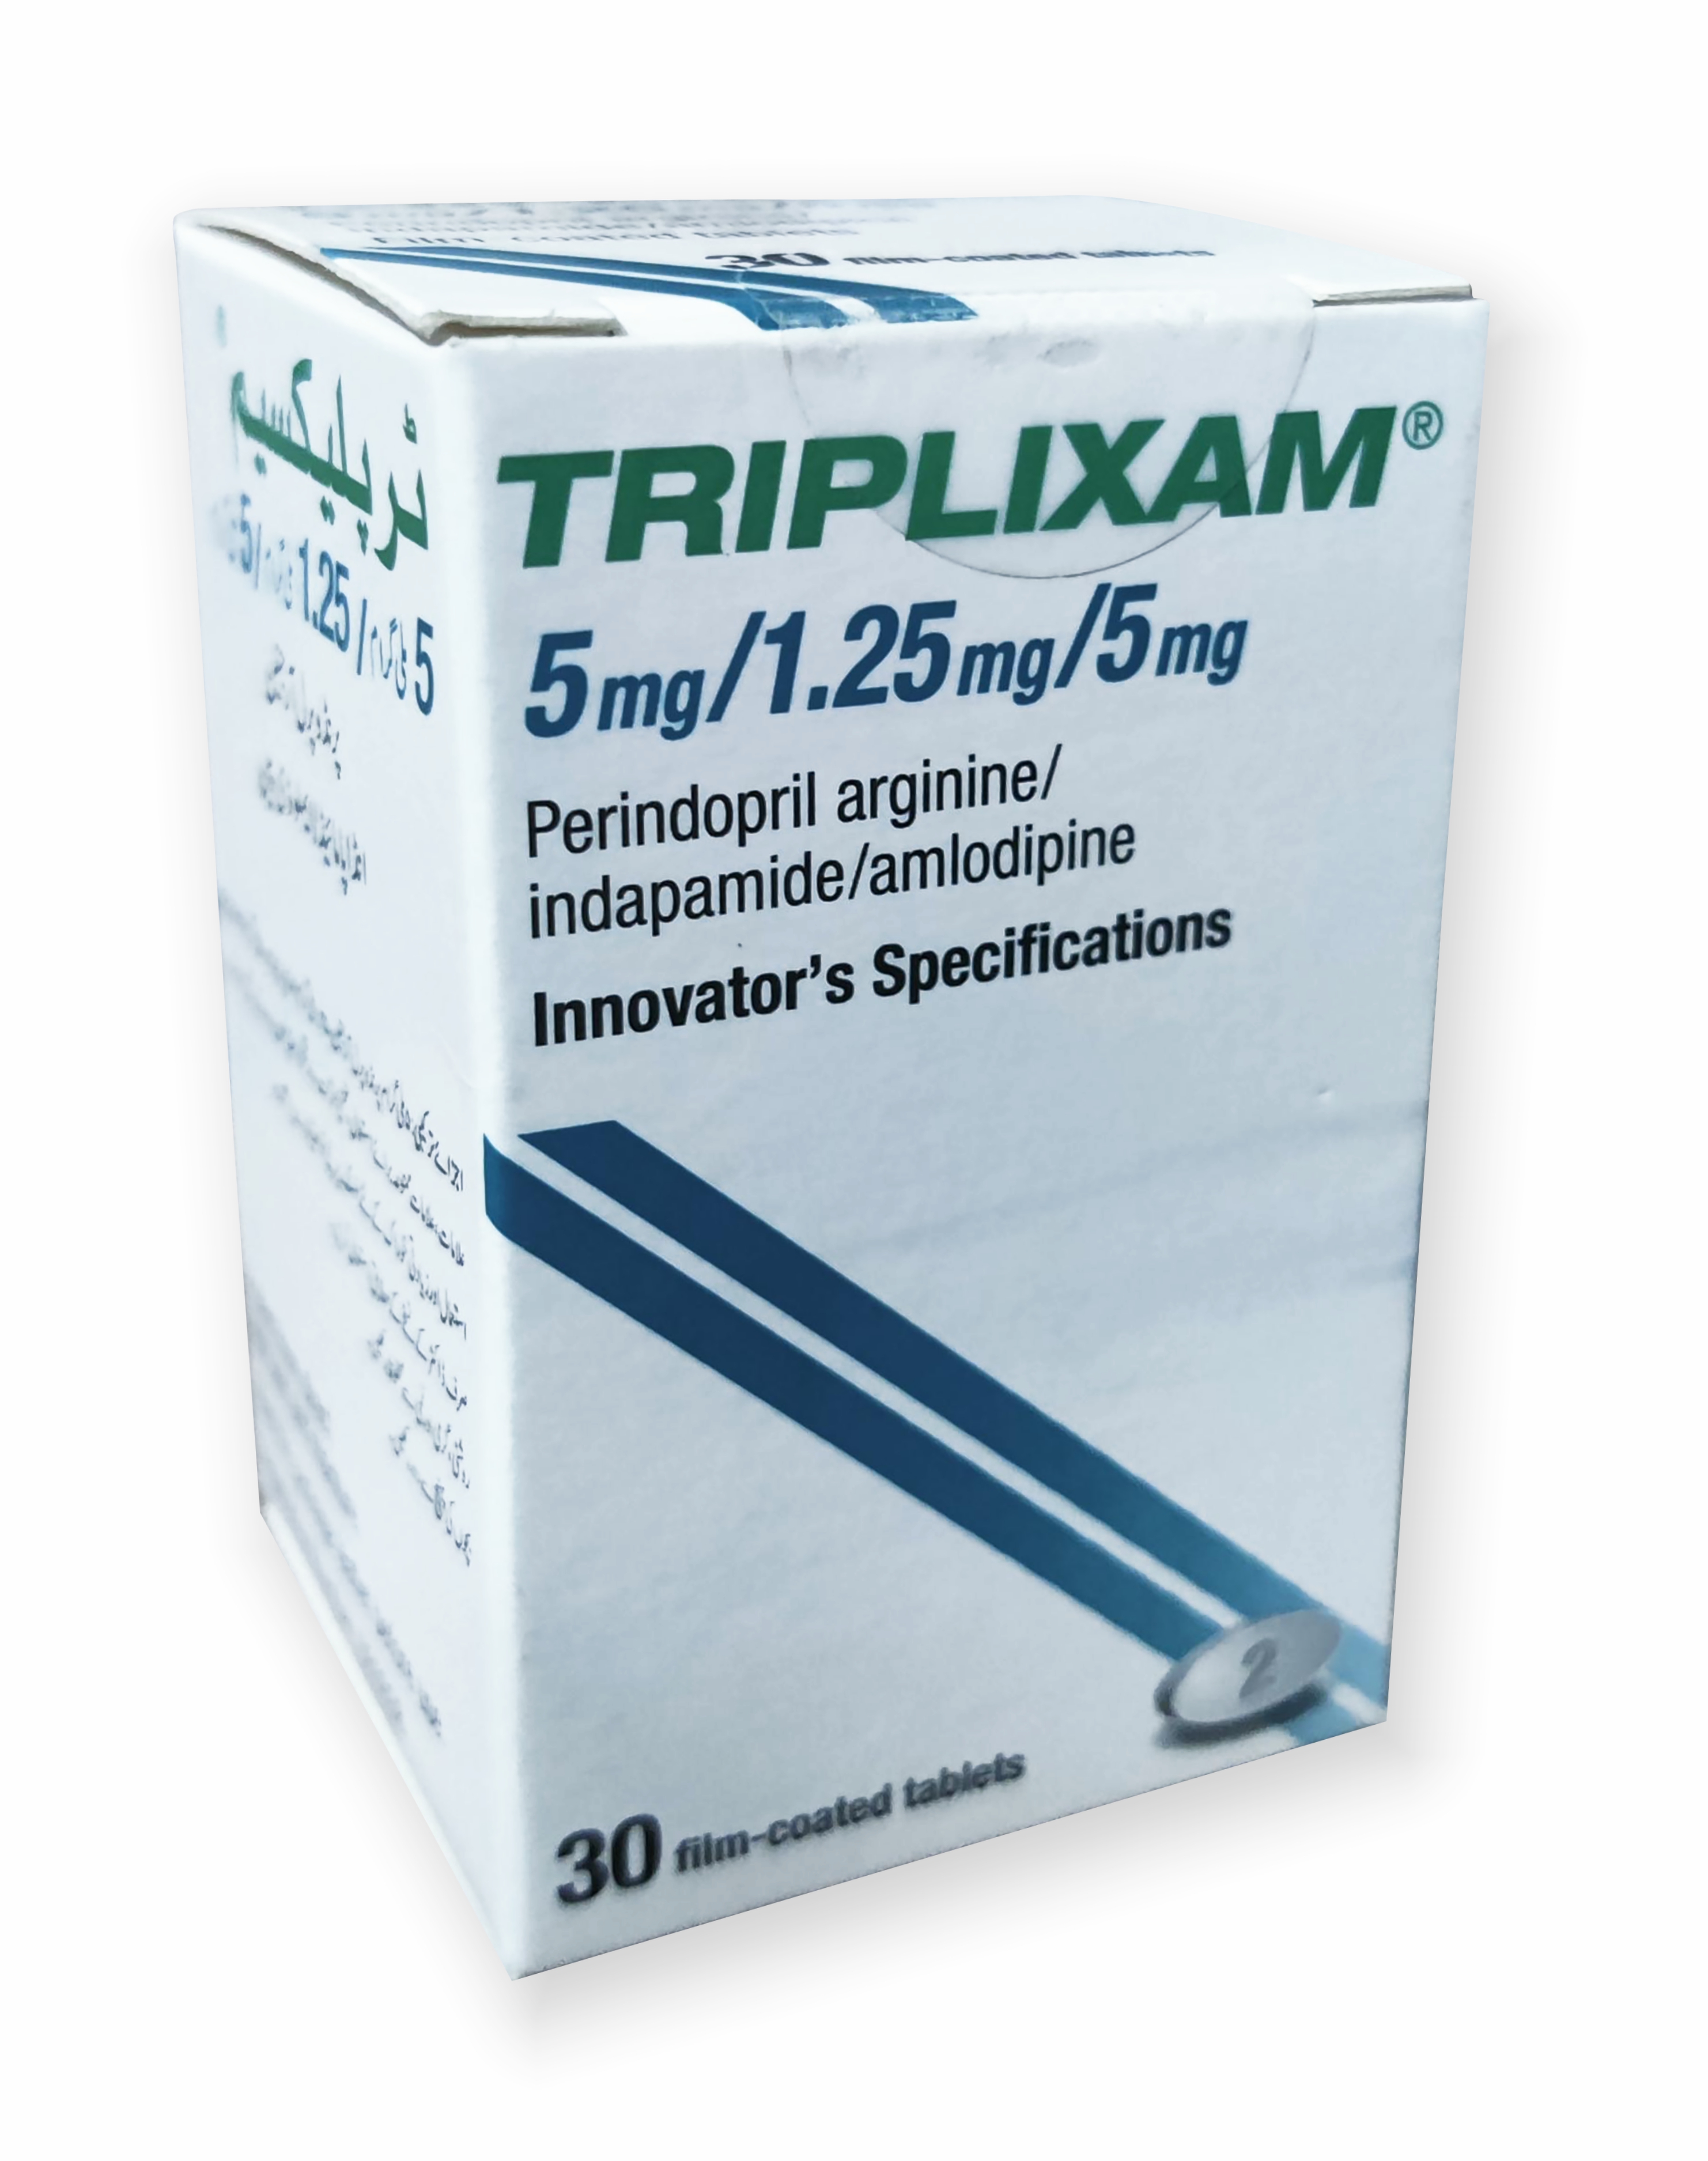 Triplixam5mg/1.25mg/5mg 